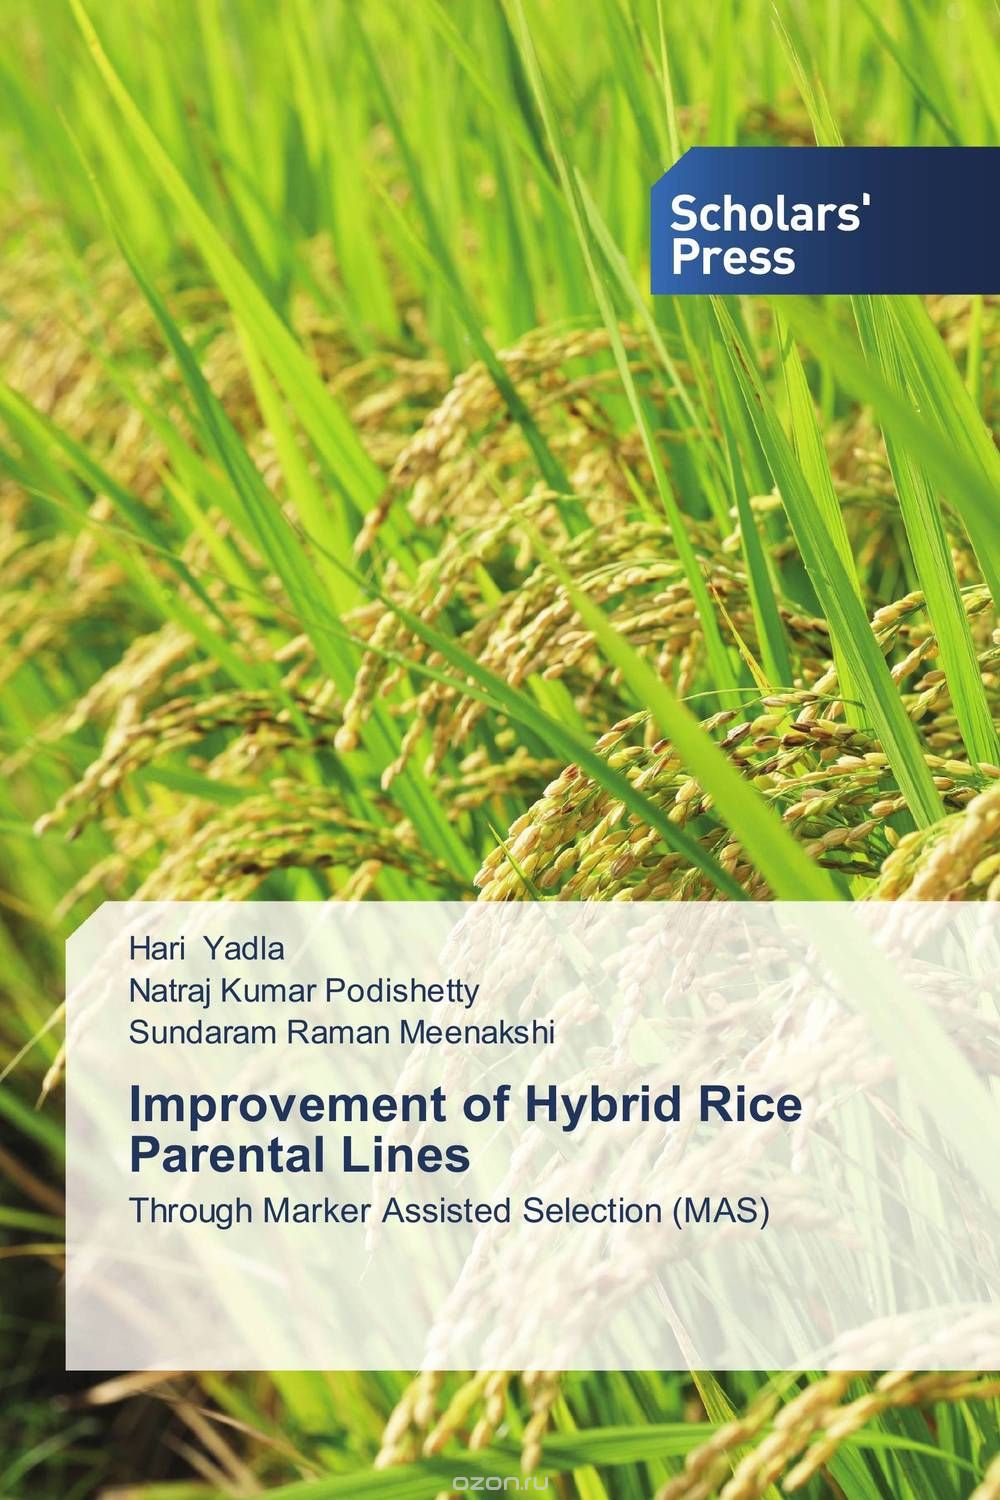 Скачать книгу "Improvement of Hybrid Rice Parental Lines"